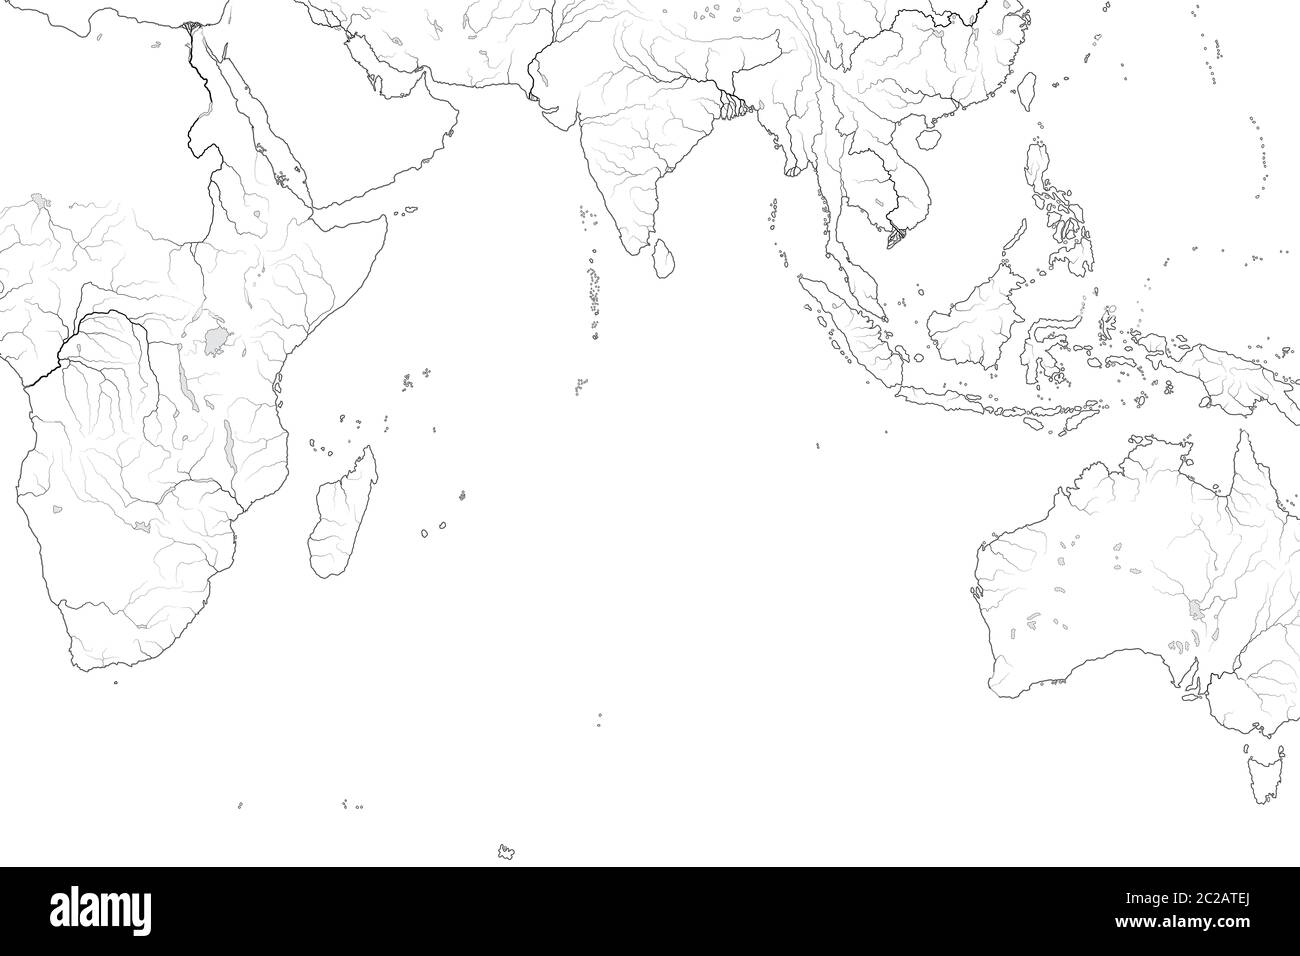 Weltkarte des INDISCHEN OZEANS: Erythraean Sea, Madagaskar, Ceylon, Bengalen, Indien, Afrika, Australien, Indonesien. Geografische Karte. Stockfoto